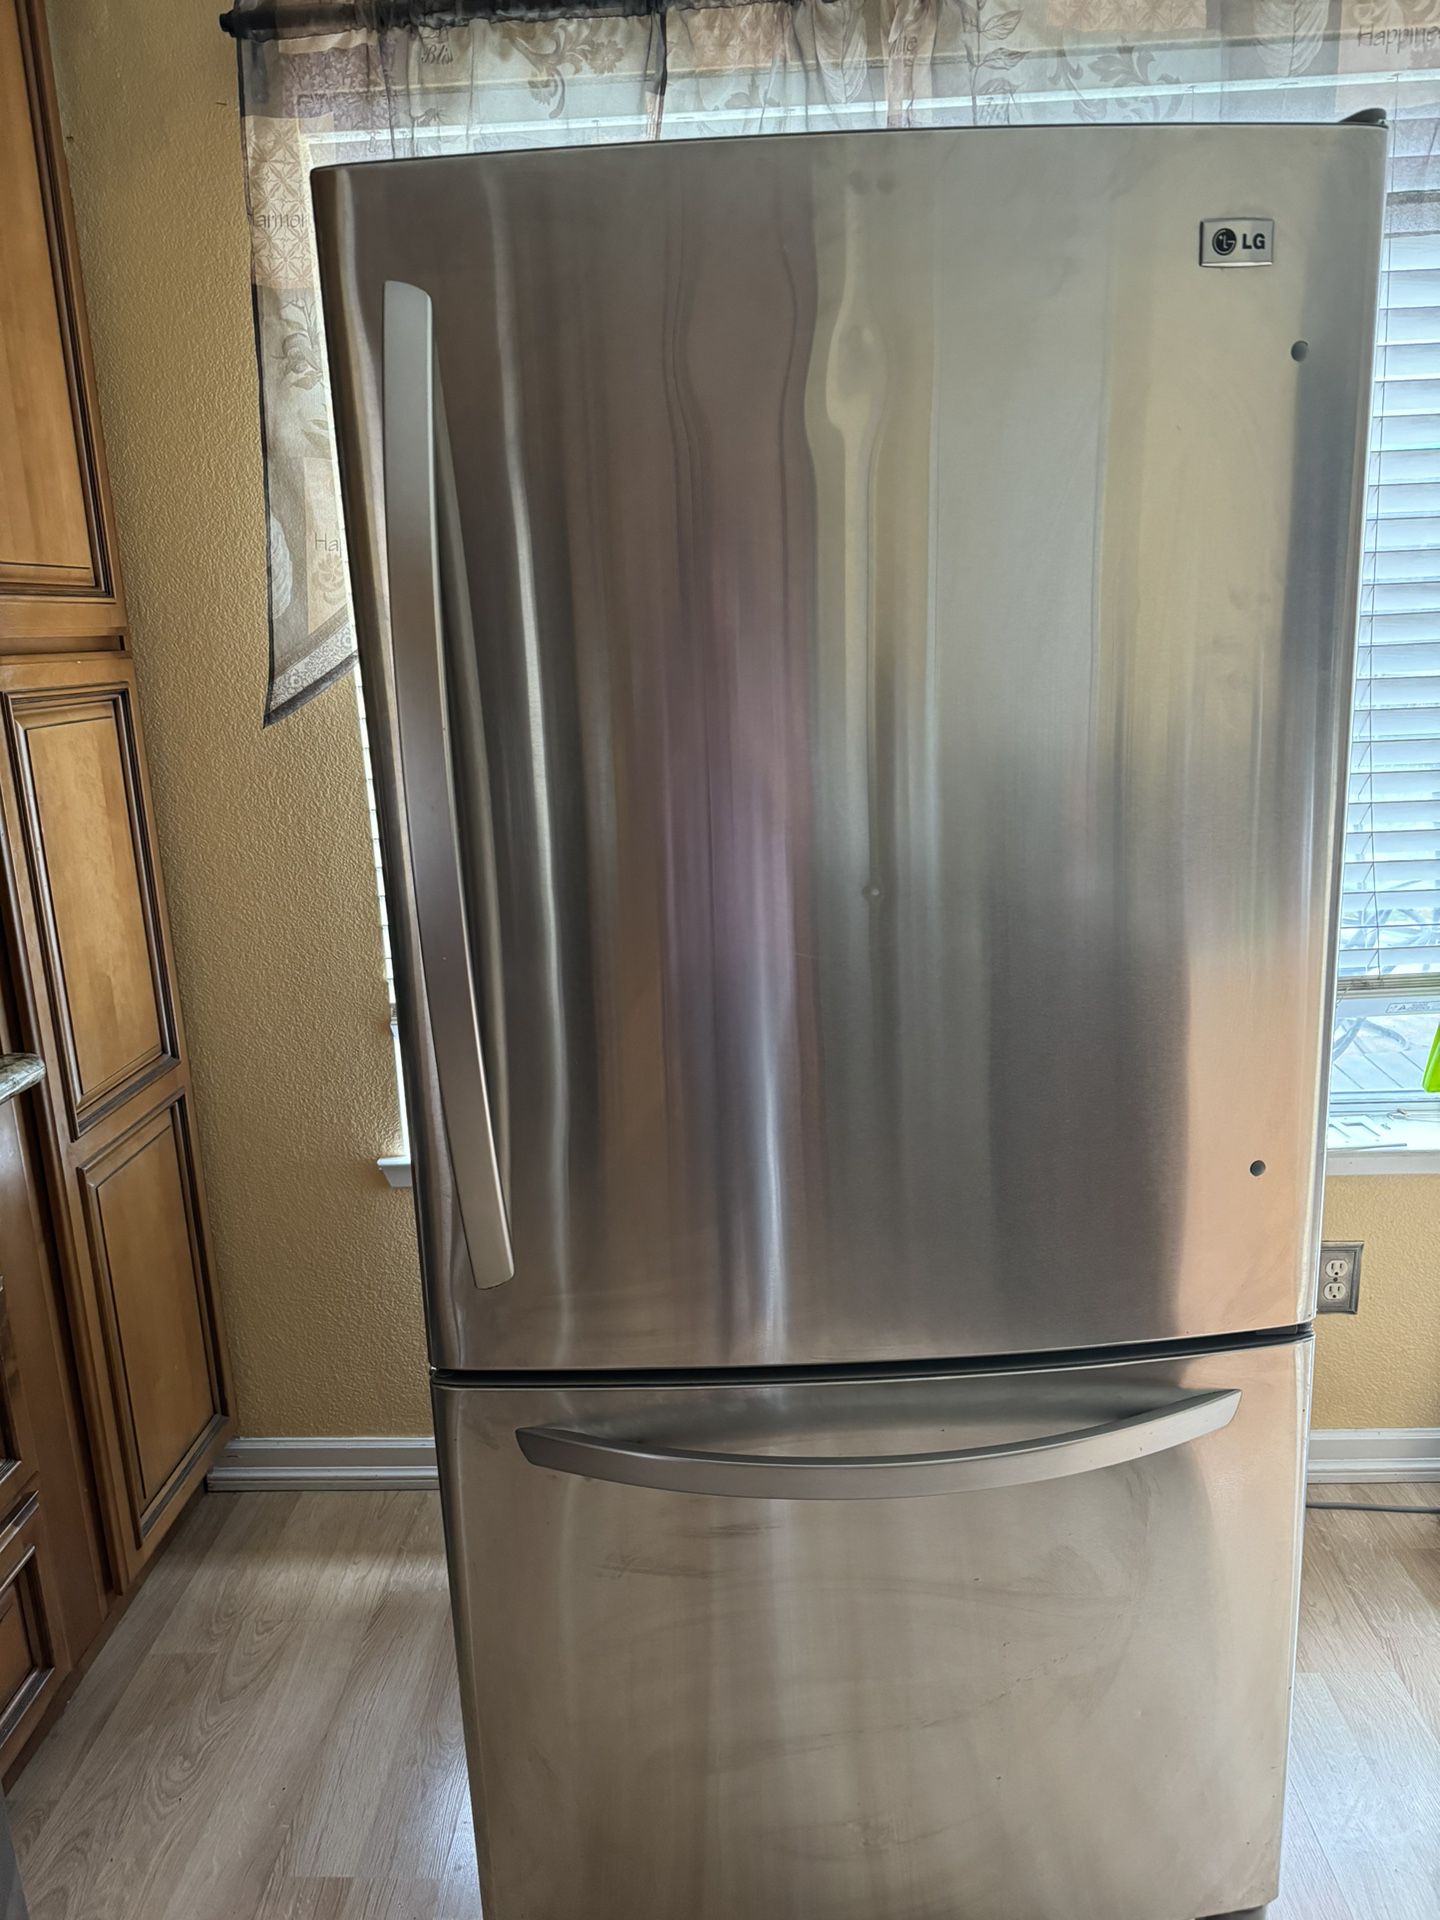 LG Refrigerator -broken 